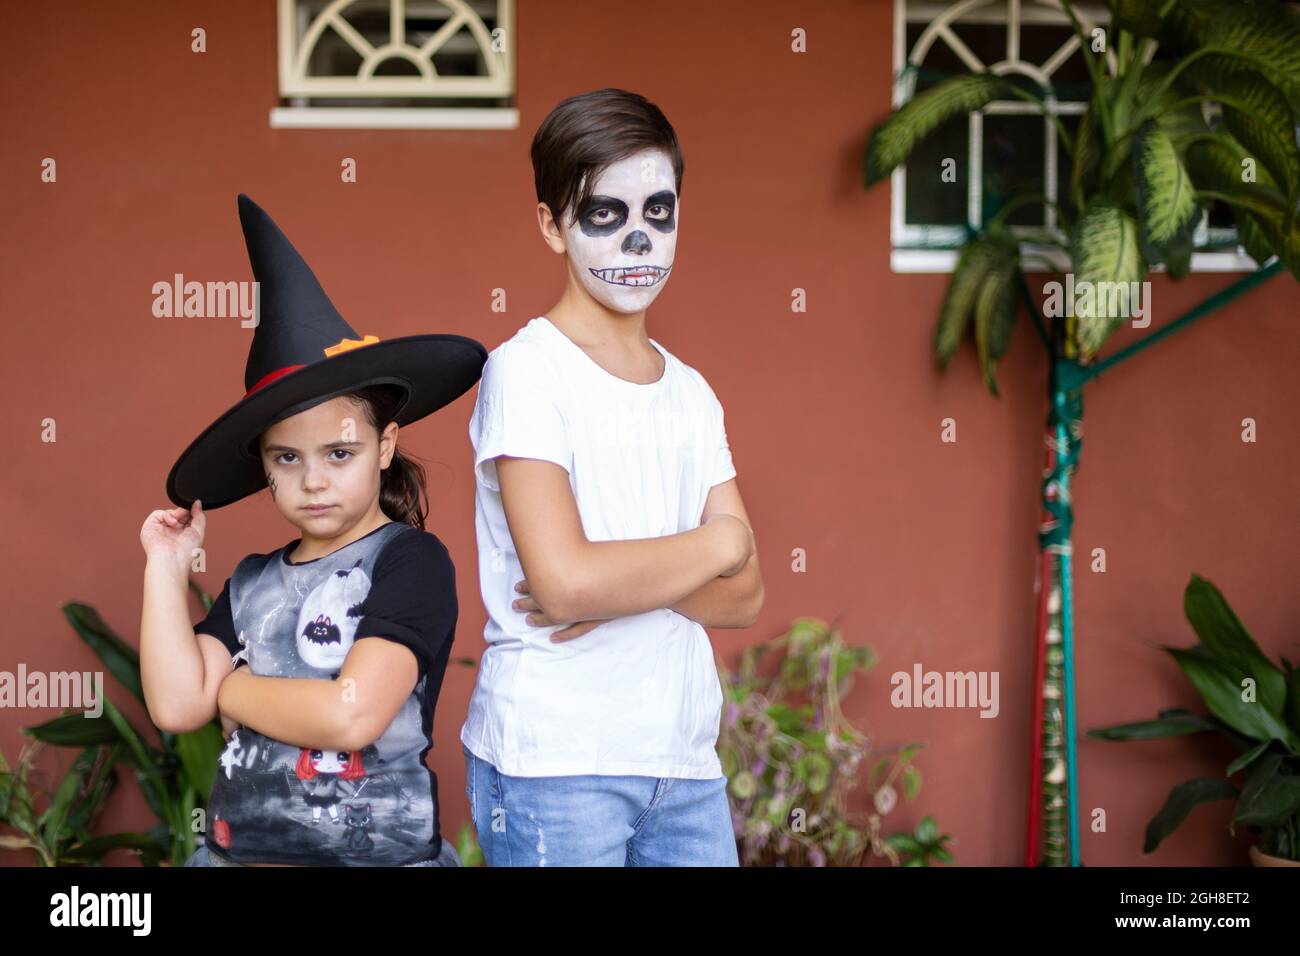 Garçon et fille caucasien posant avec leurs costumes à l'entrée de leur maison. Halloween Celebration concept. Banque D'Images